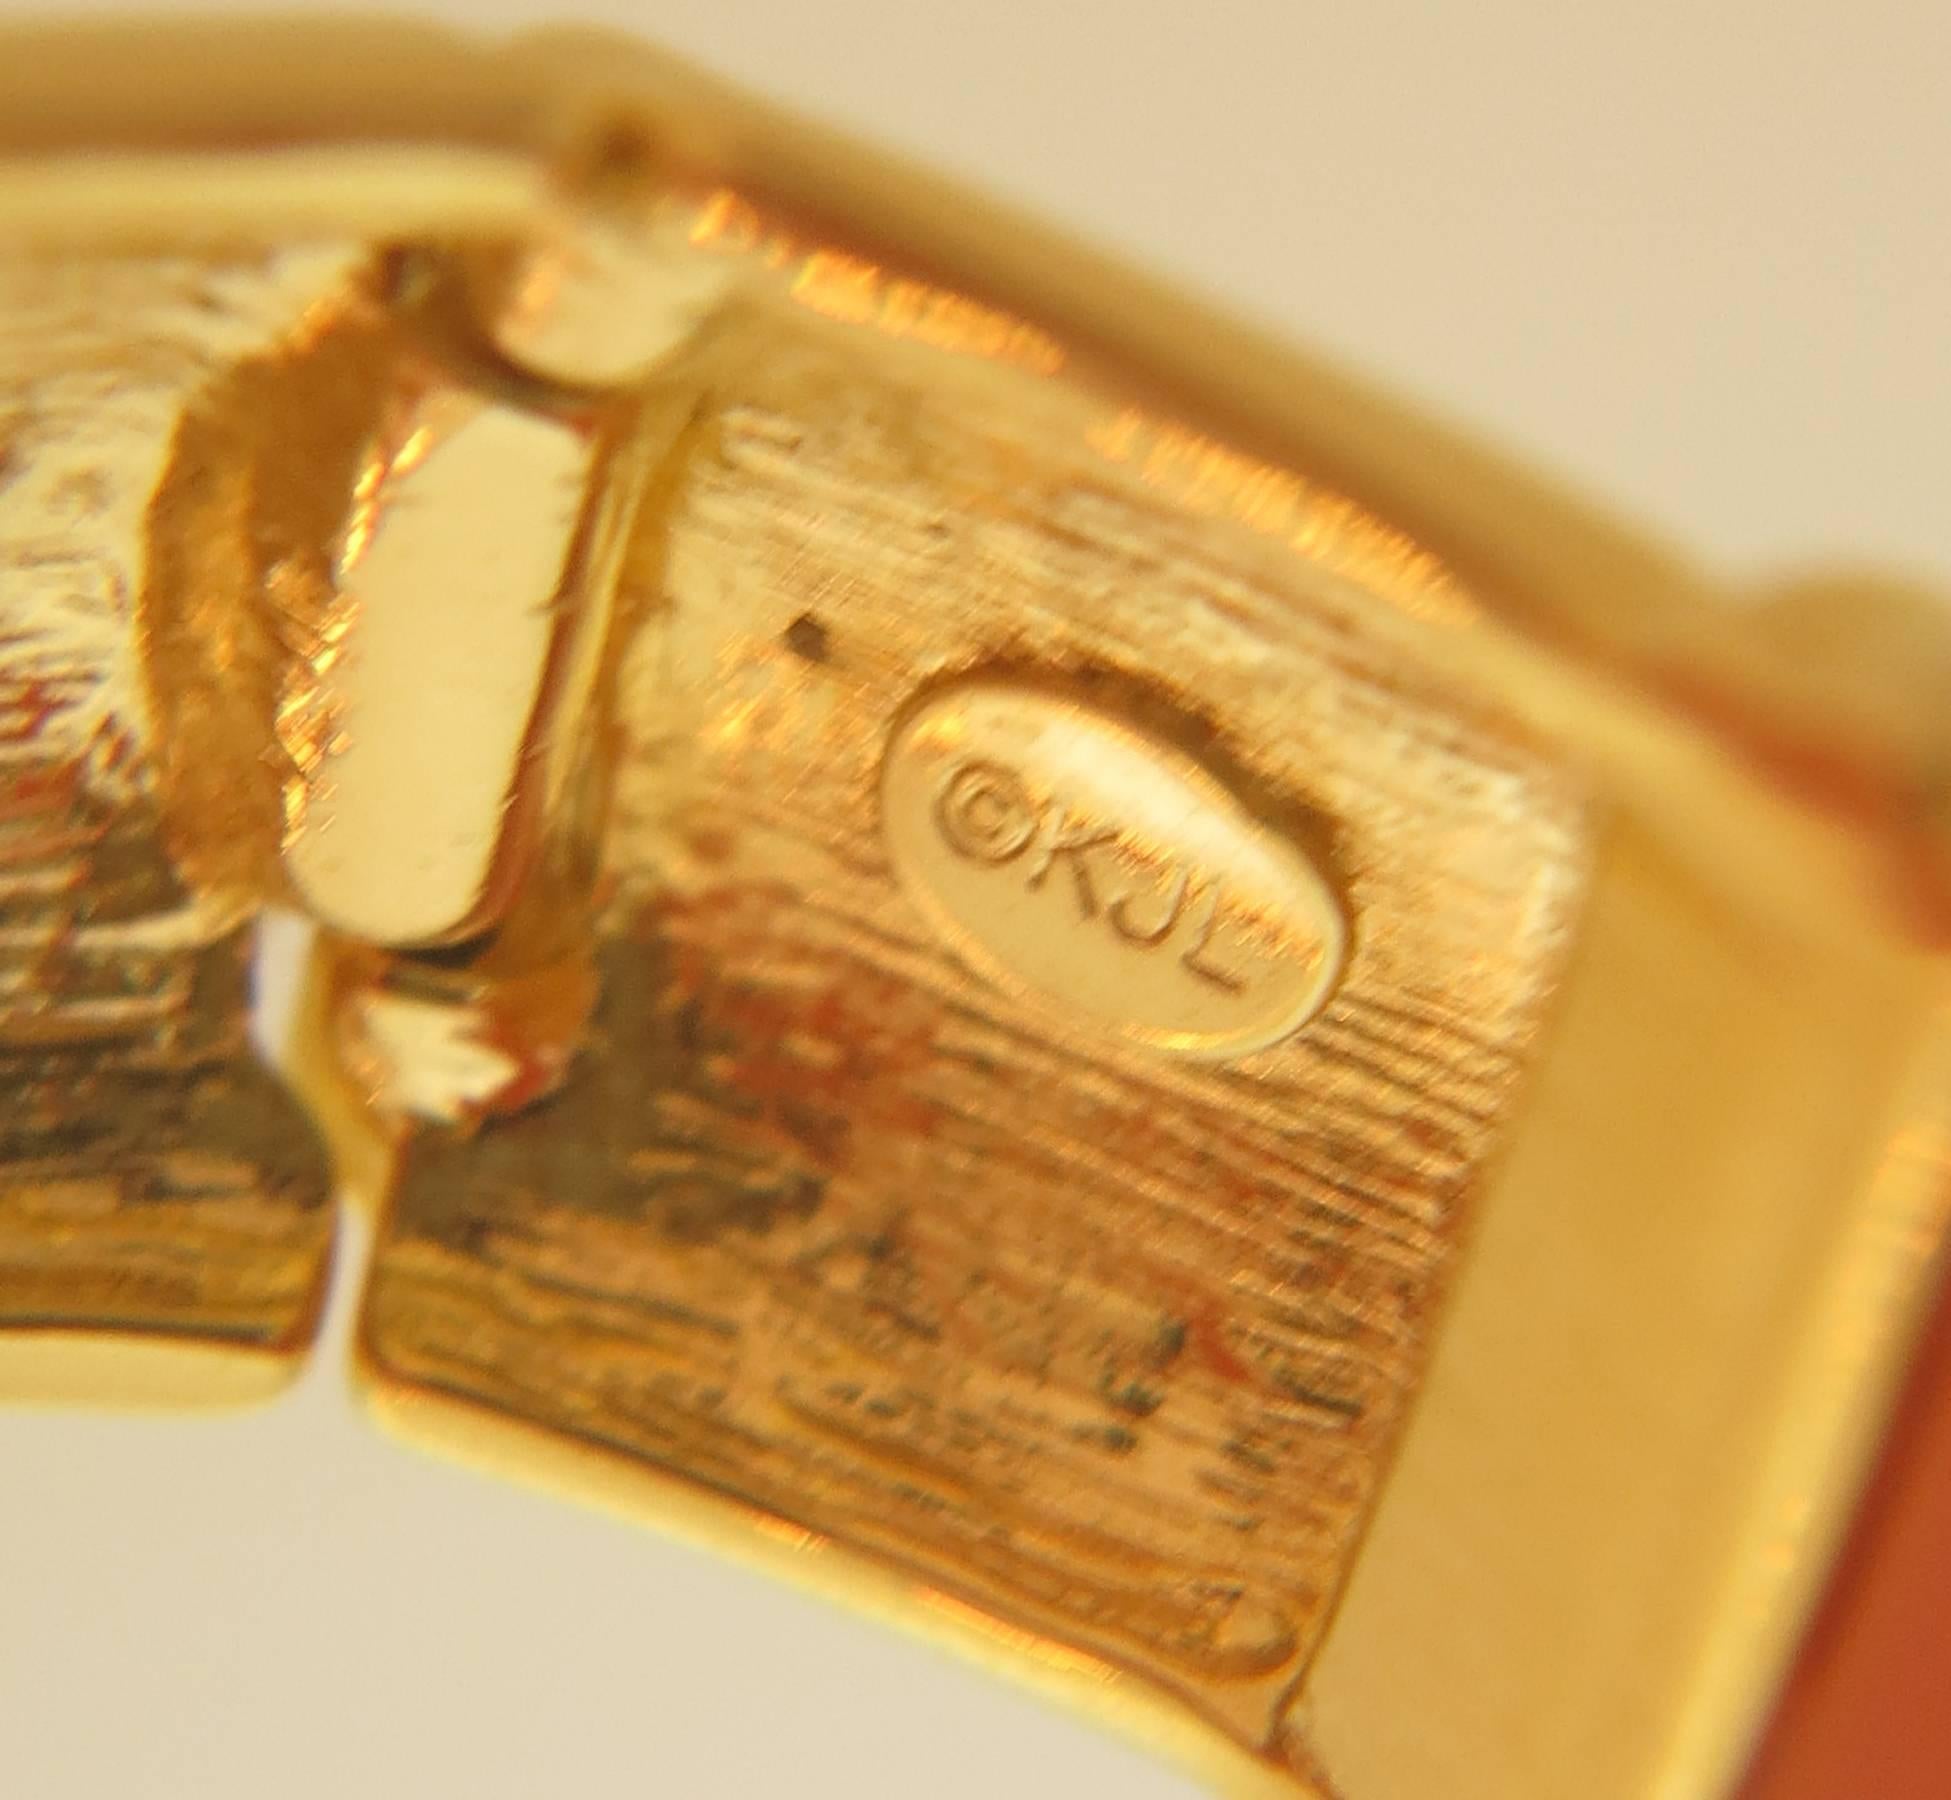 KJL Kenneth Lane coral & gold hinge clamper bracelet in barely worn condition. Marked KJL. Almost 1